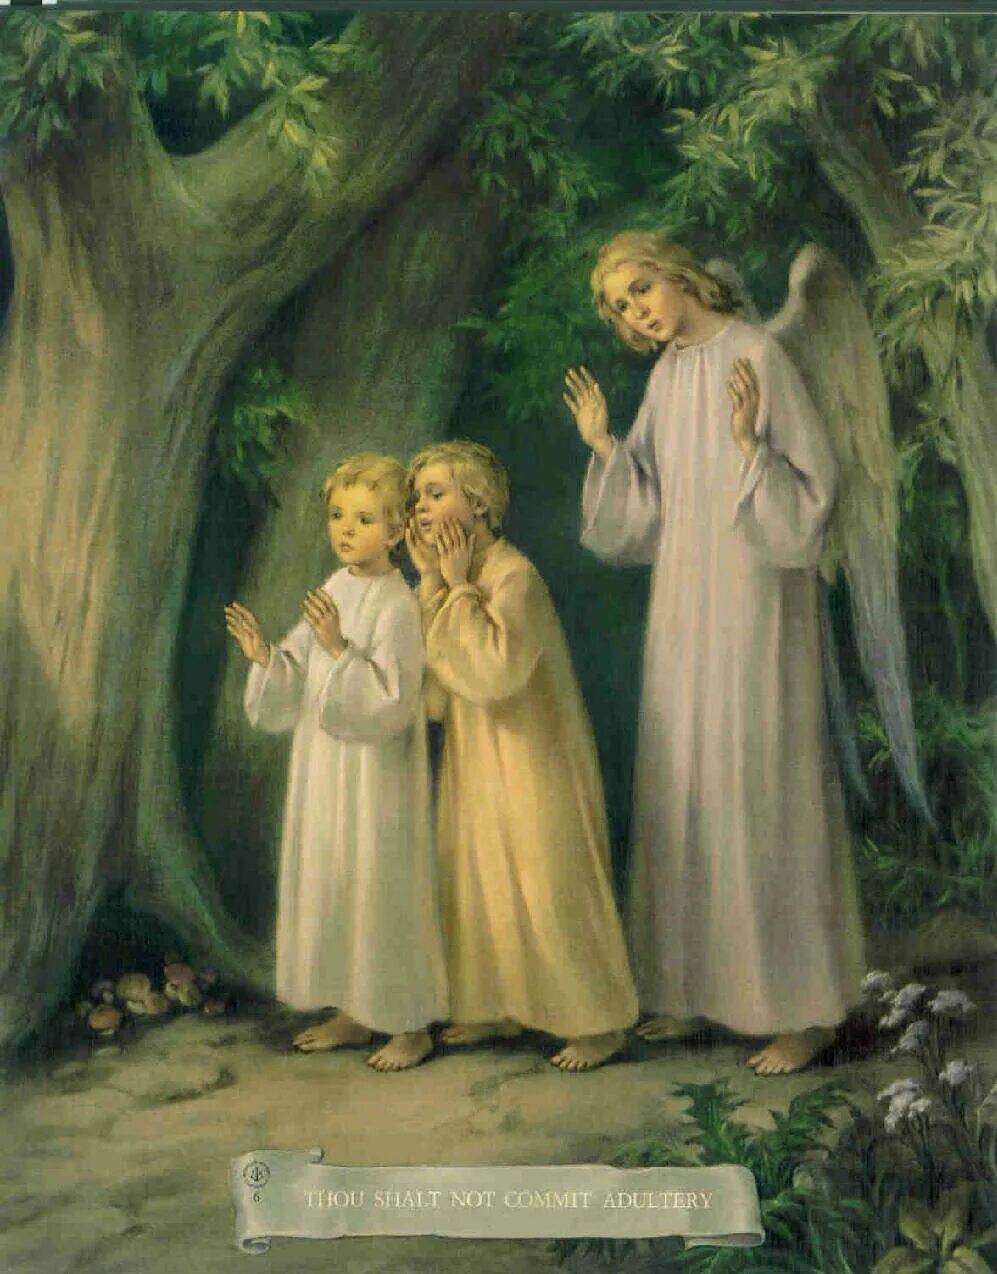 Three angels. Иисус Христос и ангелы. Три ангела. Картинки Иисуса Христа с ангелами. Богородица и ангелы.